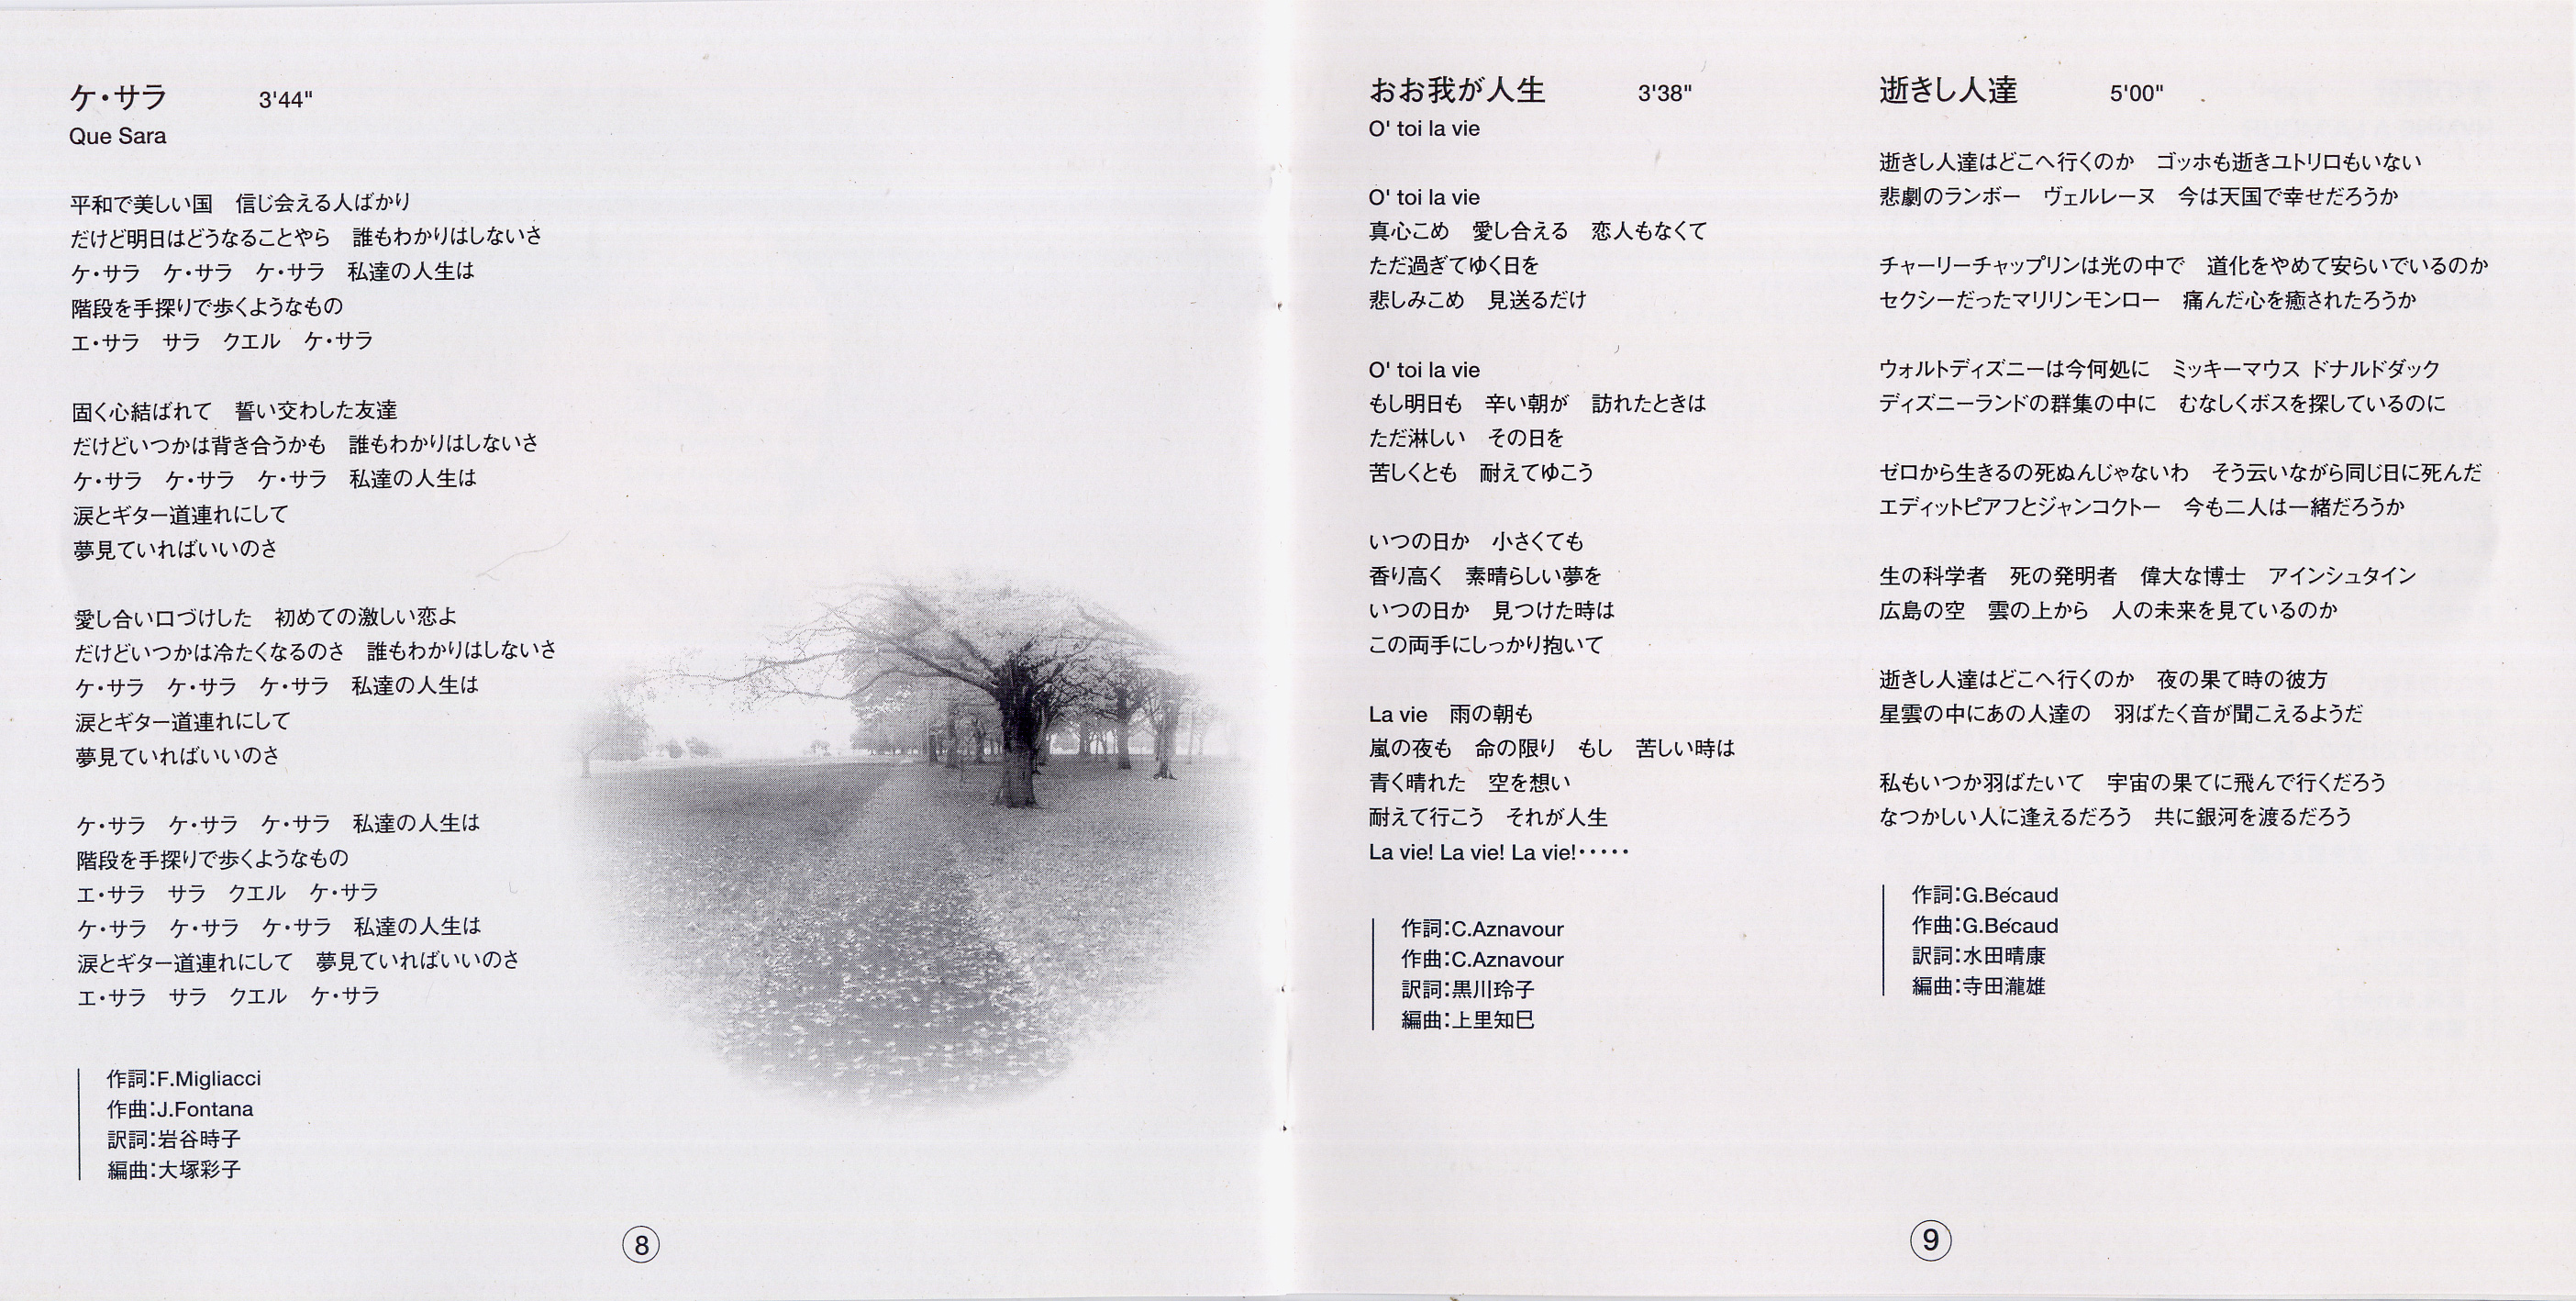 Booklet-04.jpg